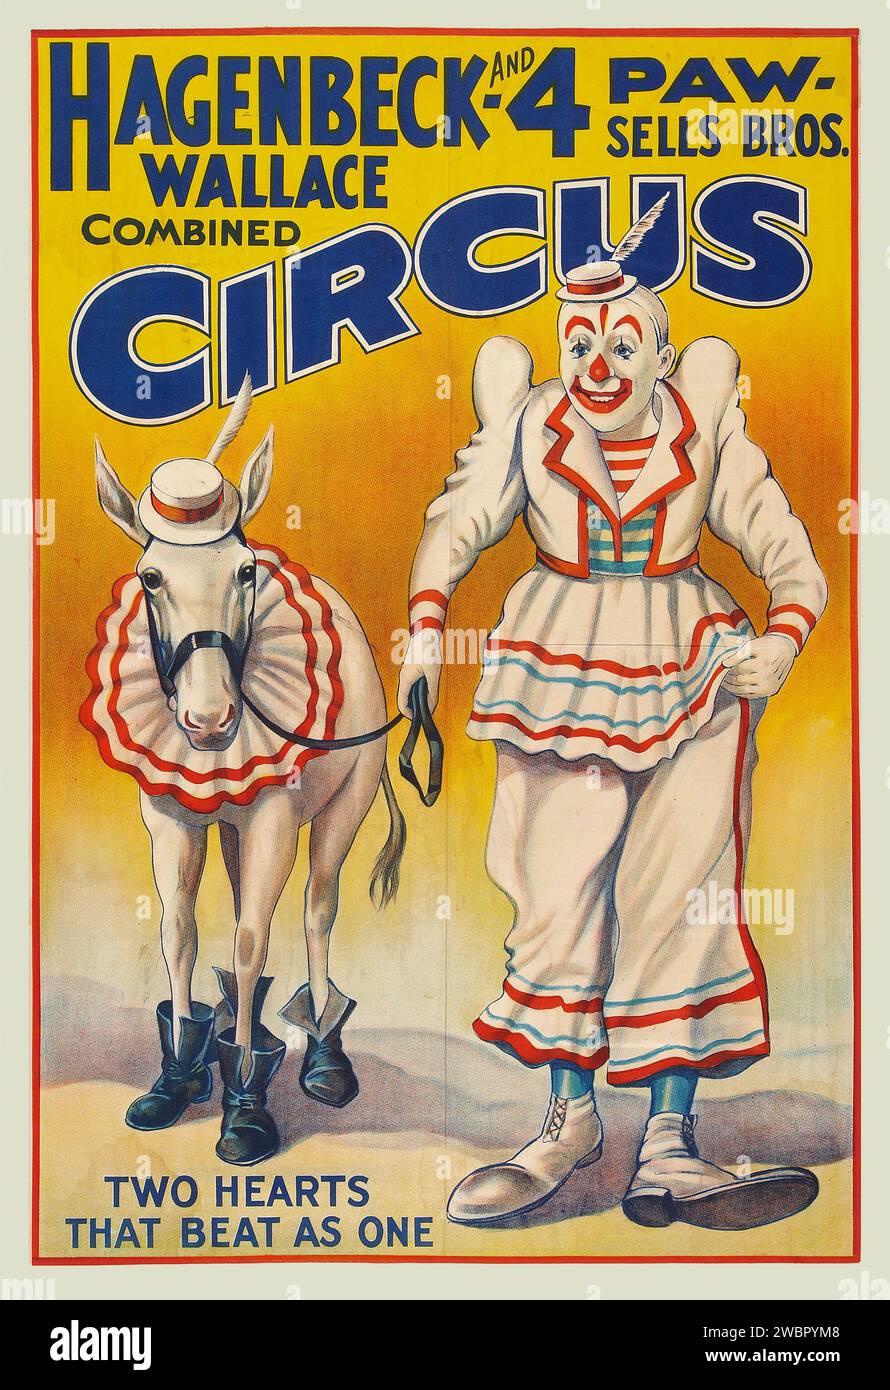 Circus Poster (Hagenbeck Wallace & 4 Paw-Sells Bros, 1930s) avec un clown et un cheval Banque D'Images